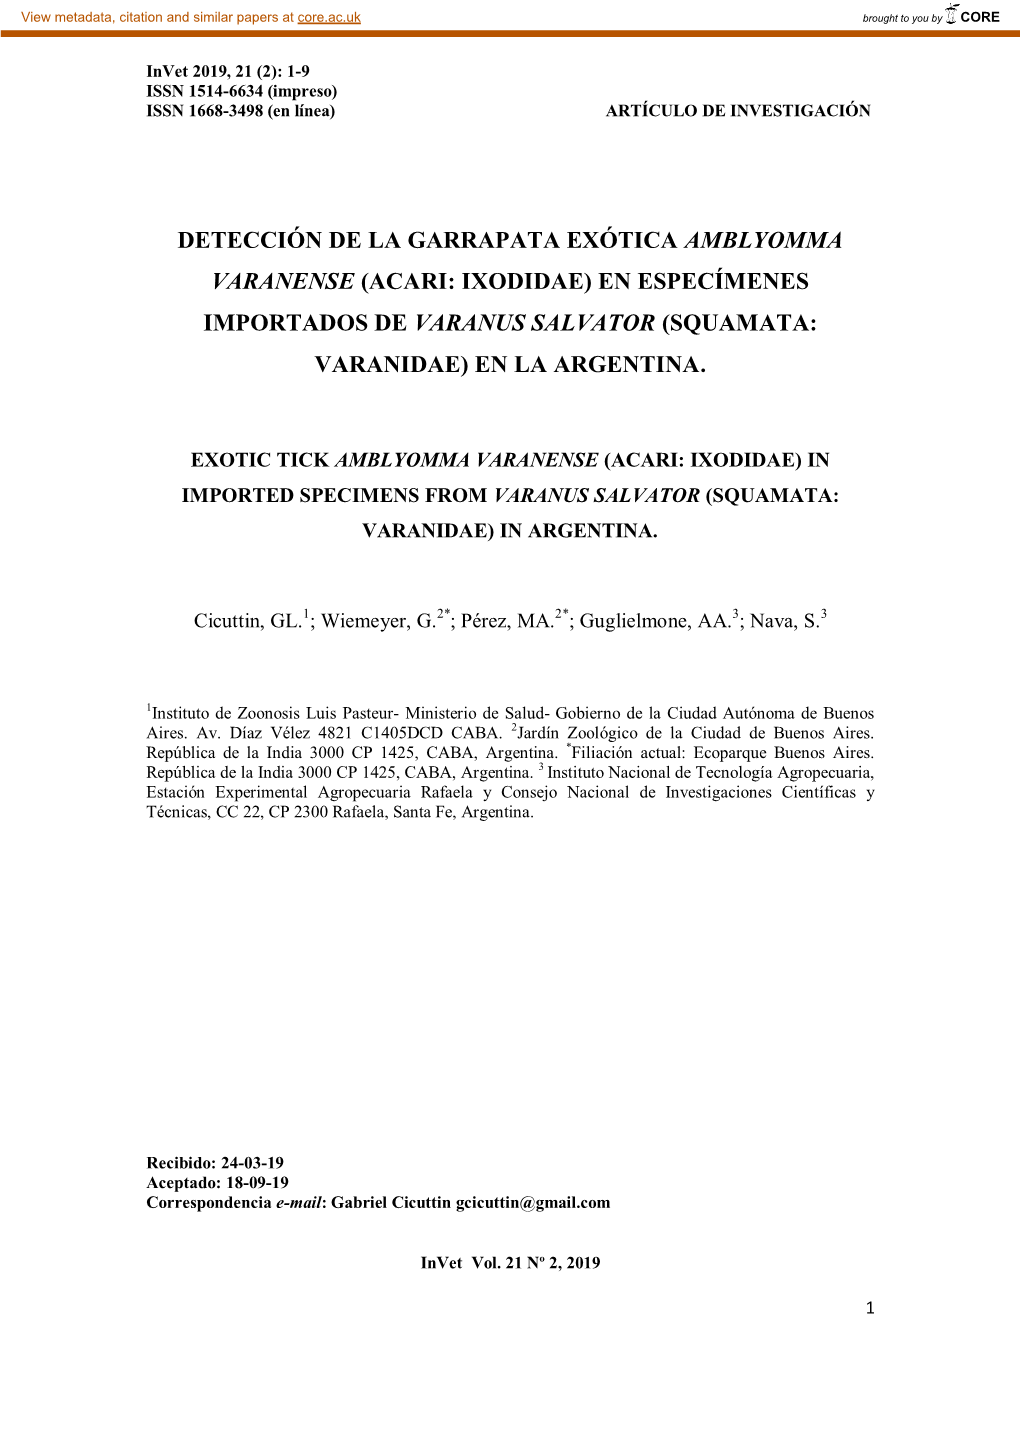 Detección De La Garrapata Exótica Amblyomma Varanense (Acari: Ixodidae) En Especímenes Importados De Varanus Salvator (Squamata: Varanidae) En La Argentina